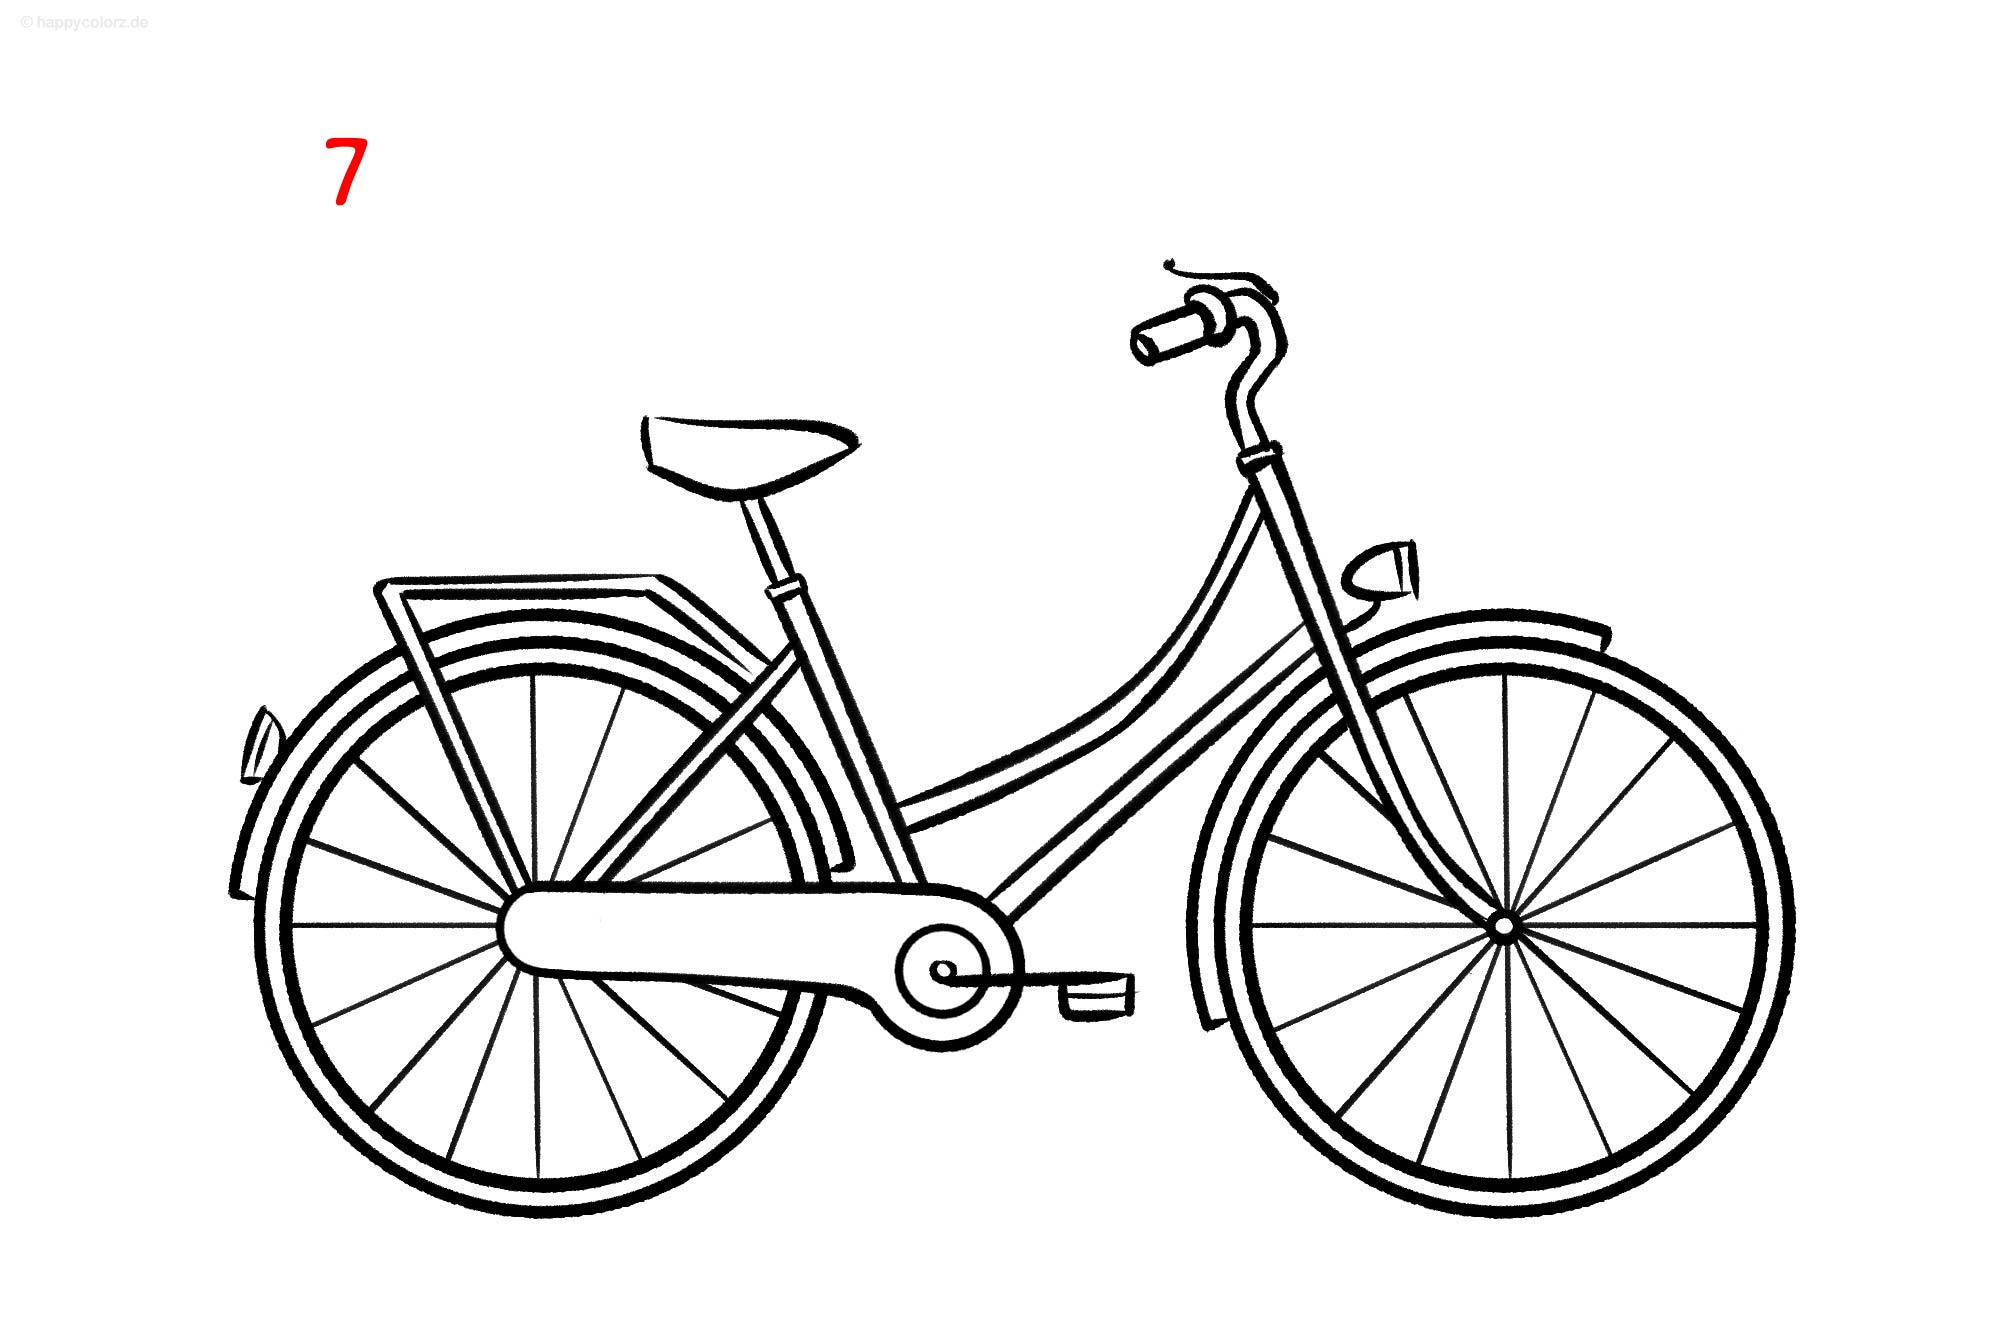 Fahrrad malen - Schritt für Schritt